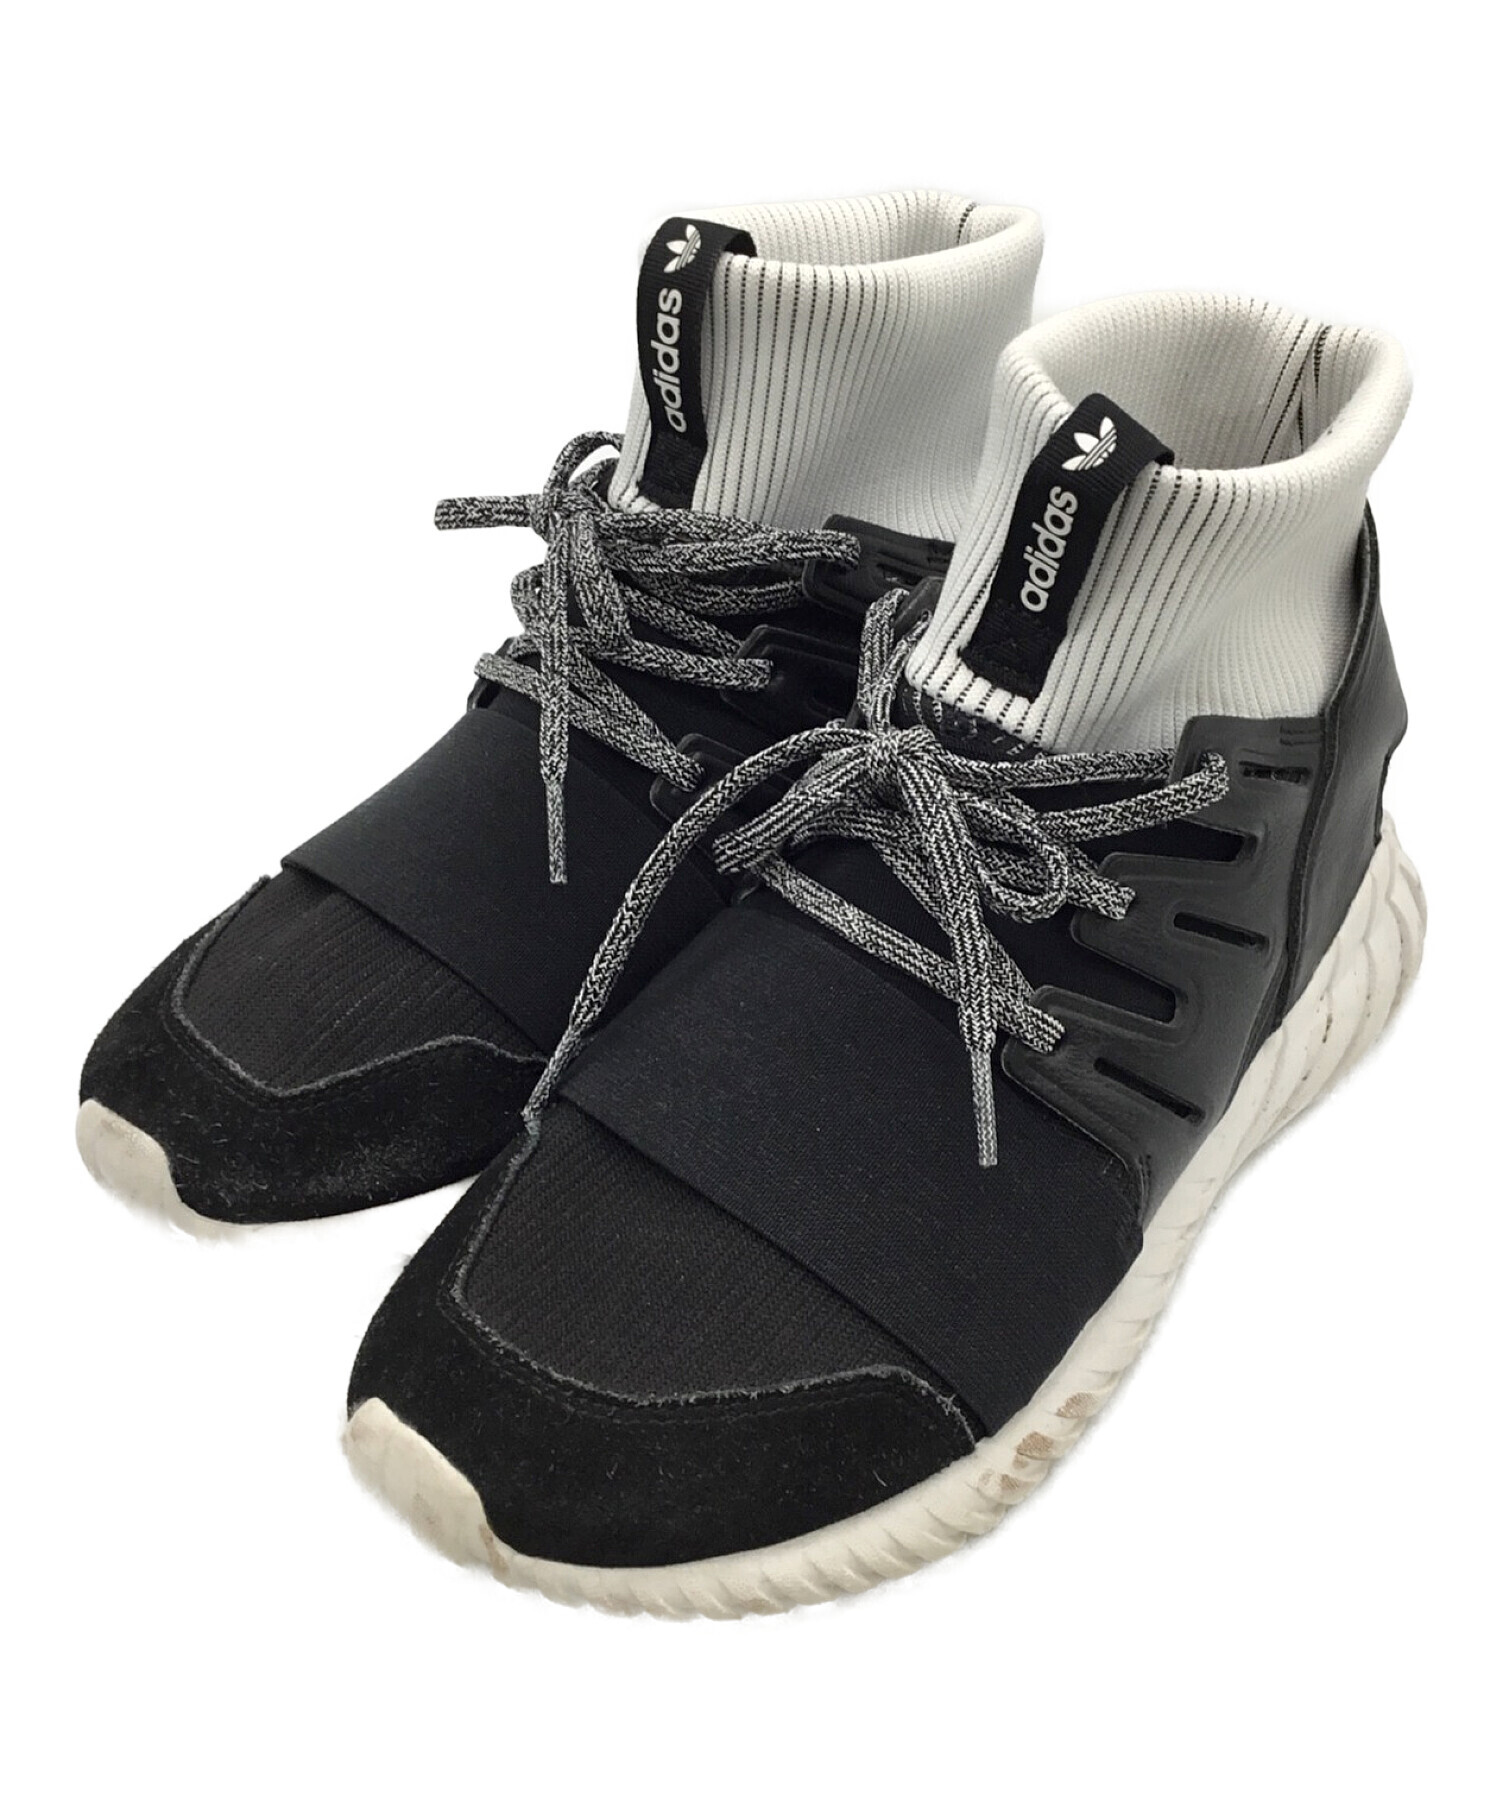 adidas (アディダス) TUBULAR DOOM ブラック×ホワイト サイズ:26.5